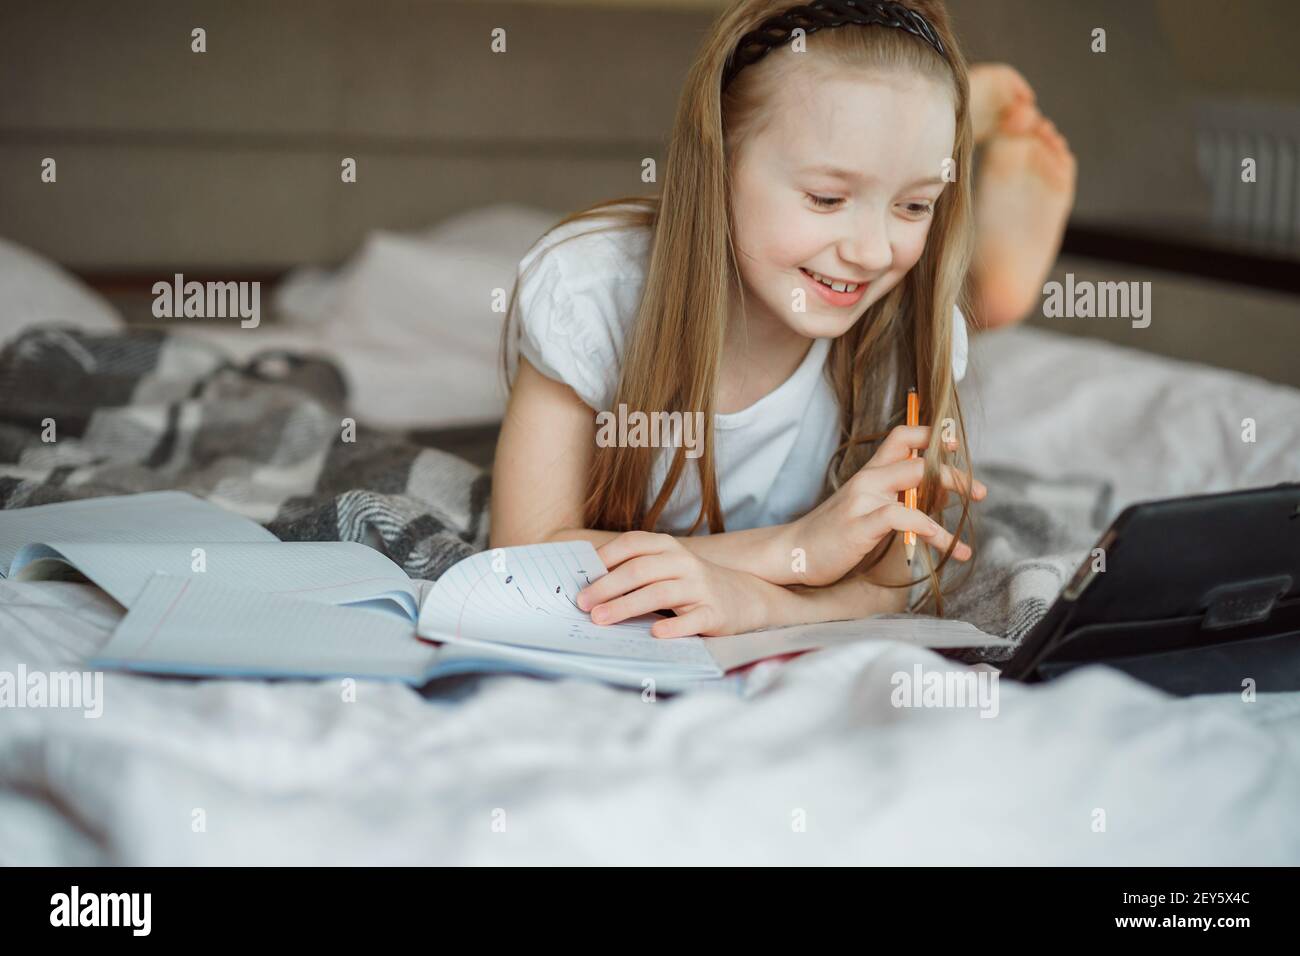 Mädchen liegt auf dem Bett, umgeben von Notizbüchern Stockfoto